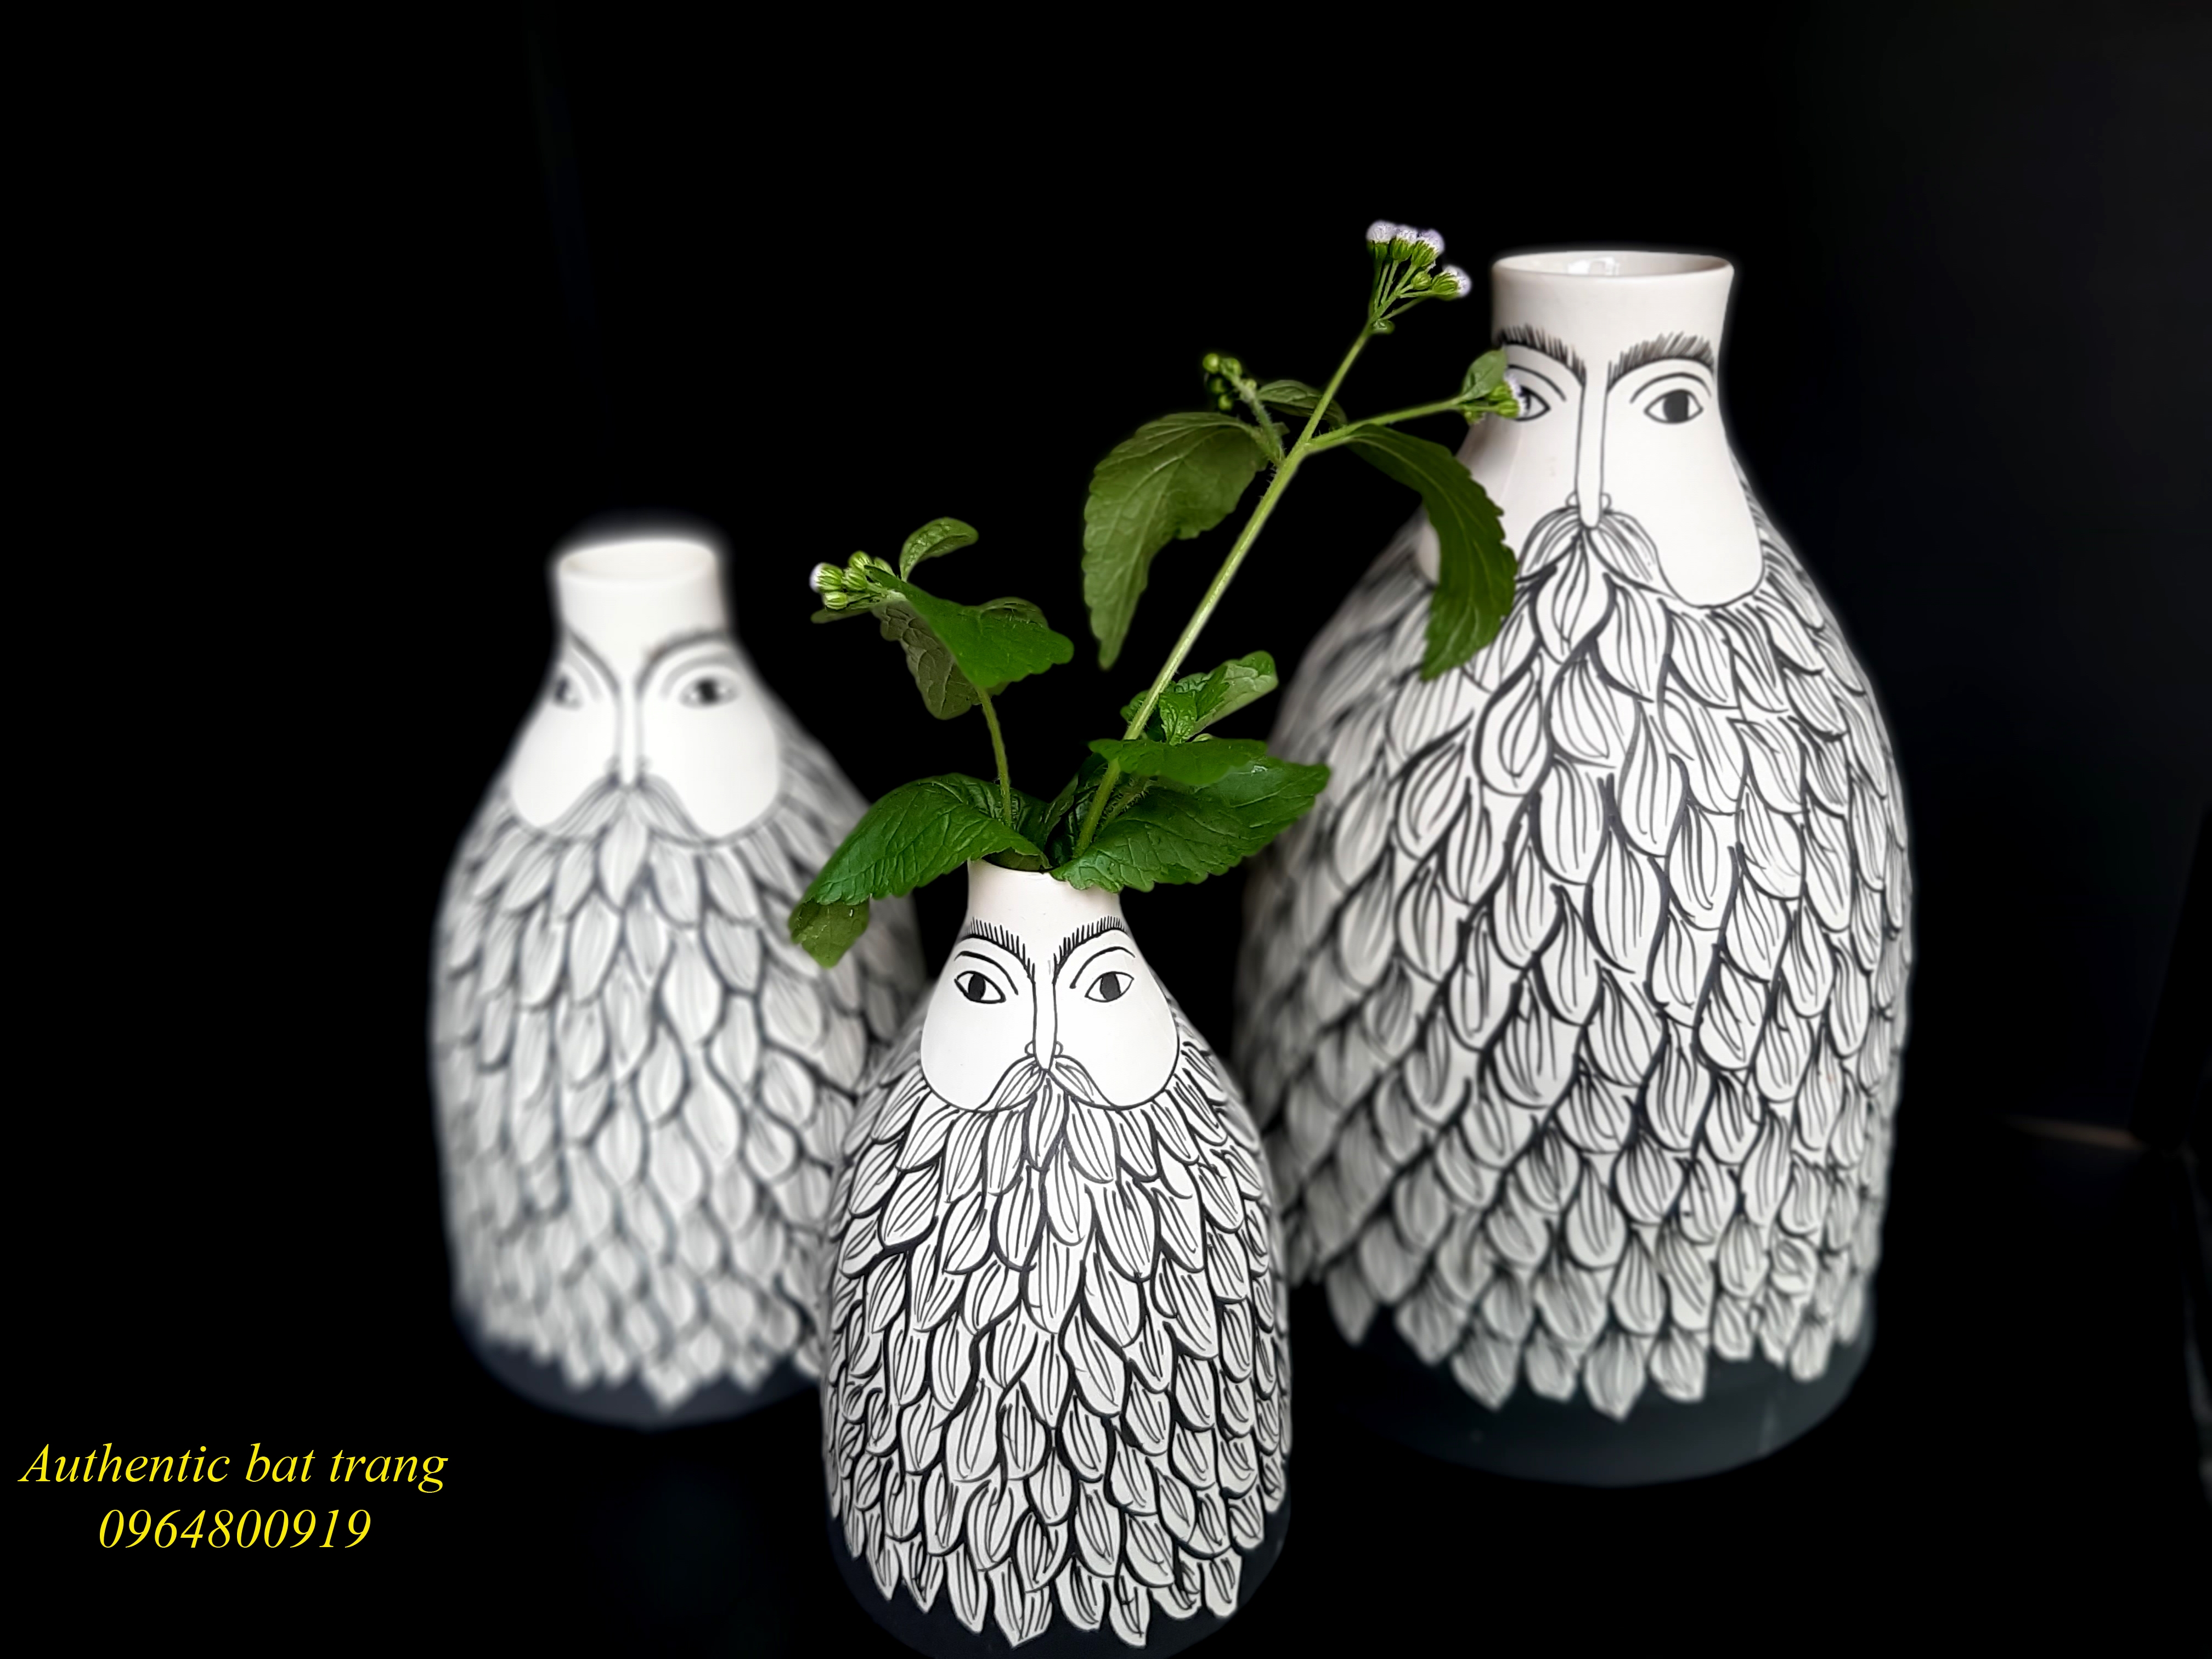 Facial vases set/ Bộ bình gốm mặt râu, sản phẩm trang trí nhà cửa, sản xuất tại xưởng gốm sứ Authentic bat trang